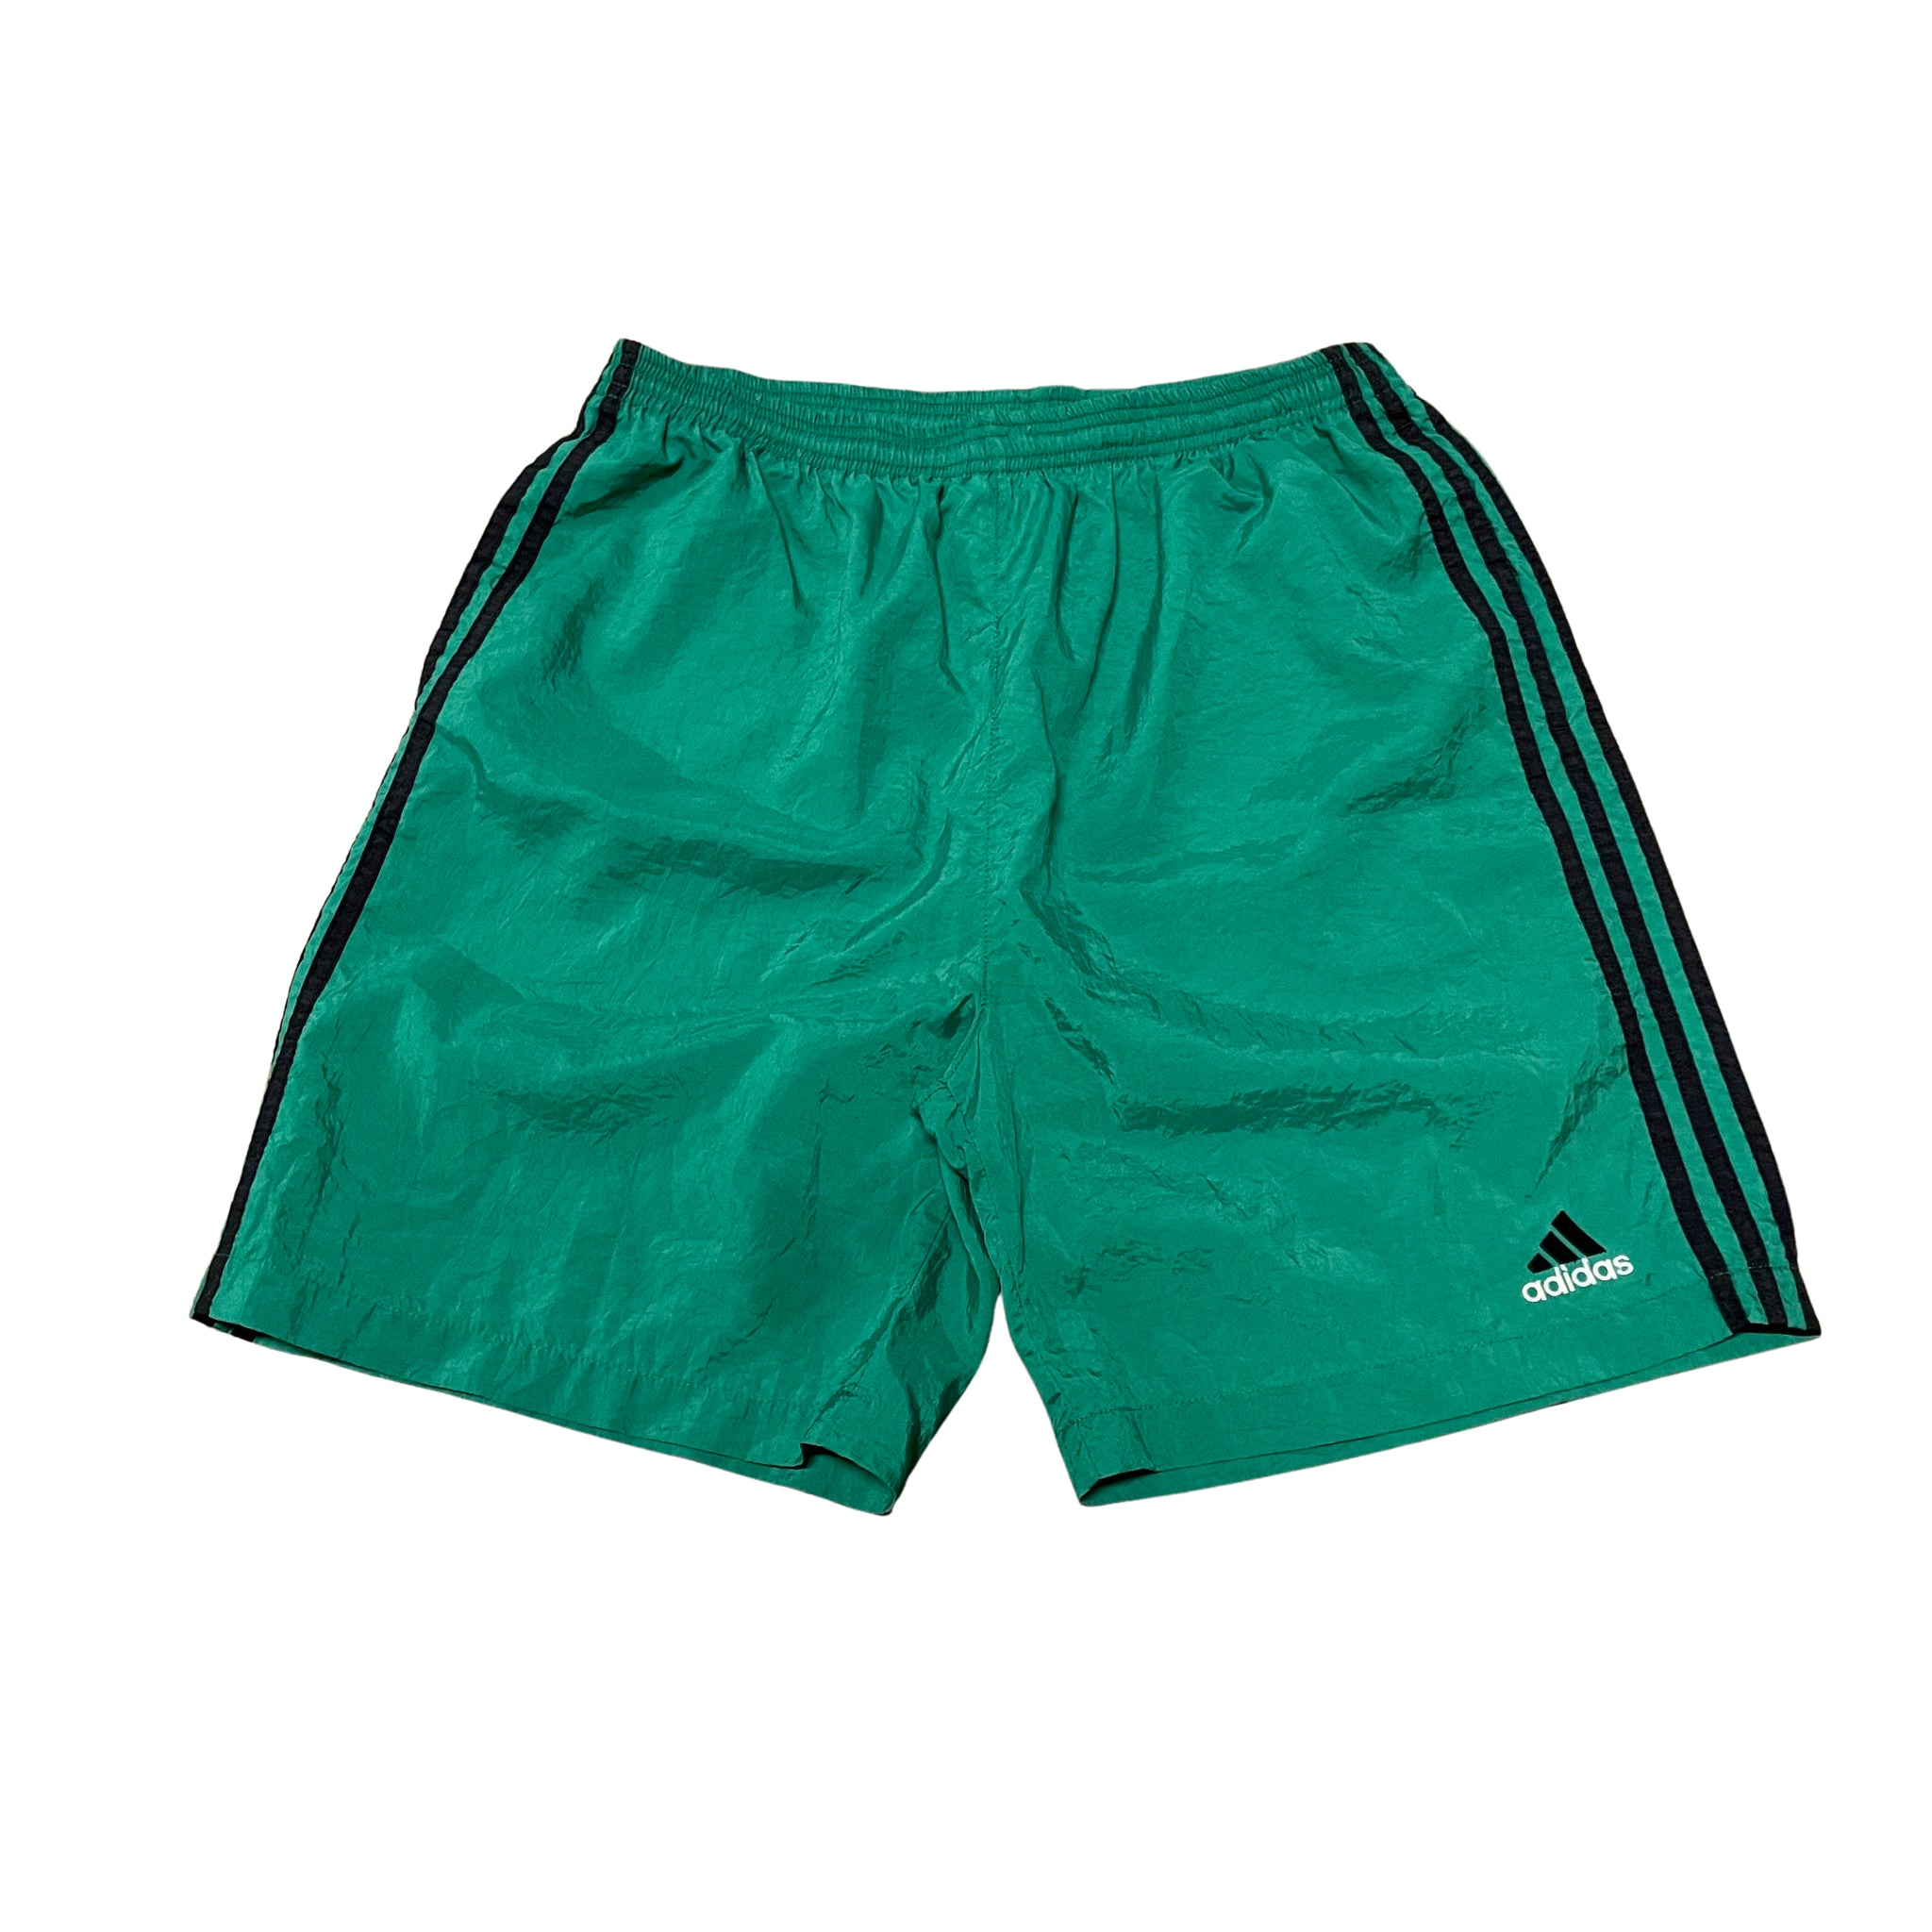 Adidas Nylon Shorts - L